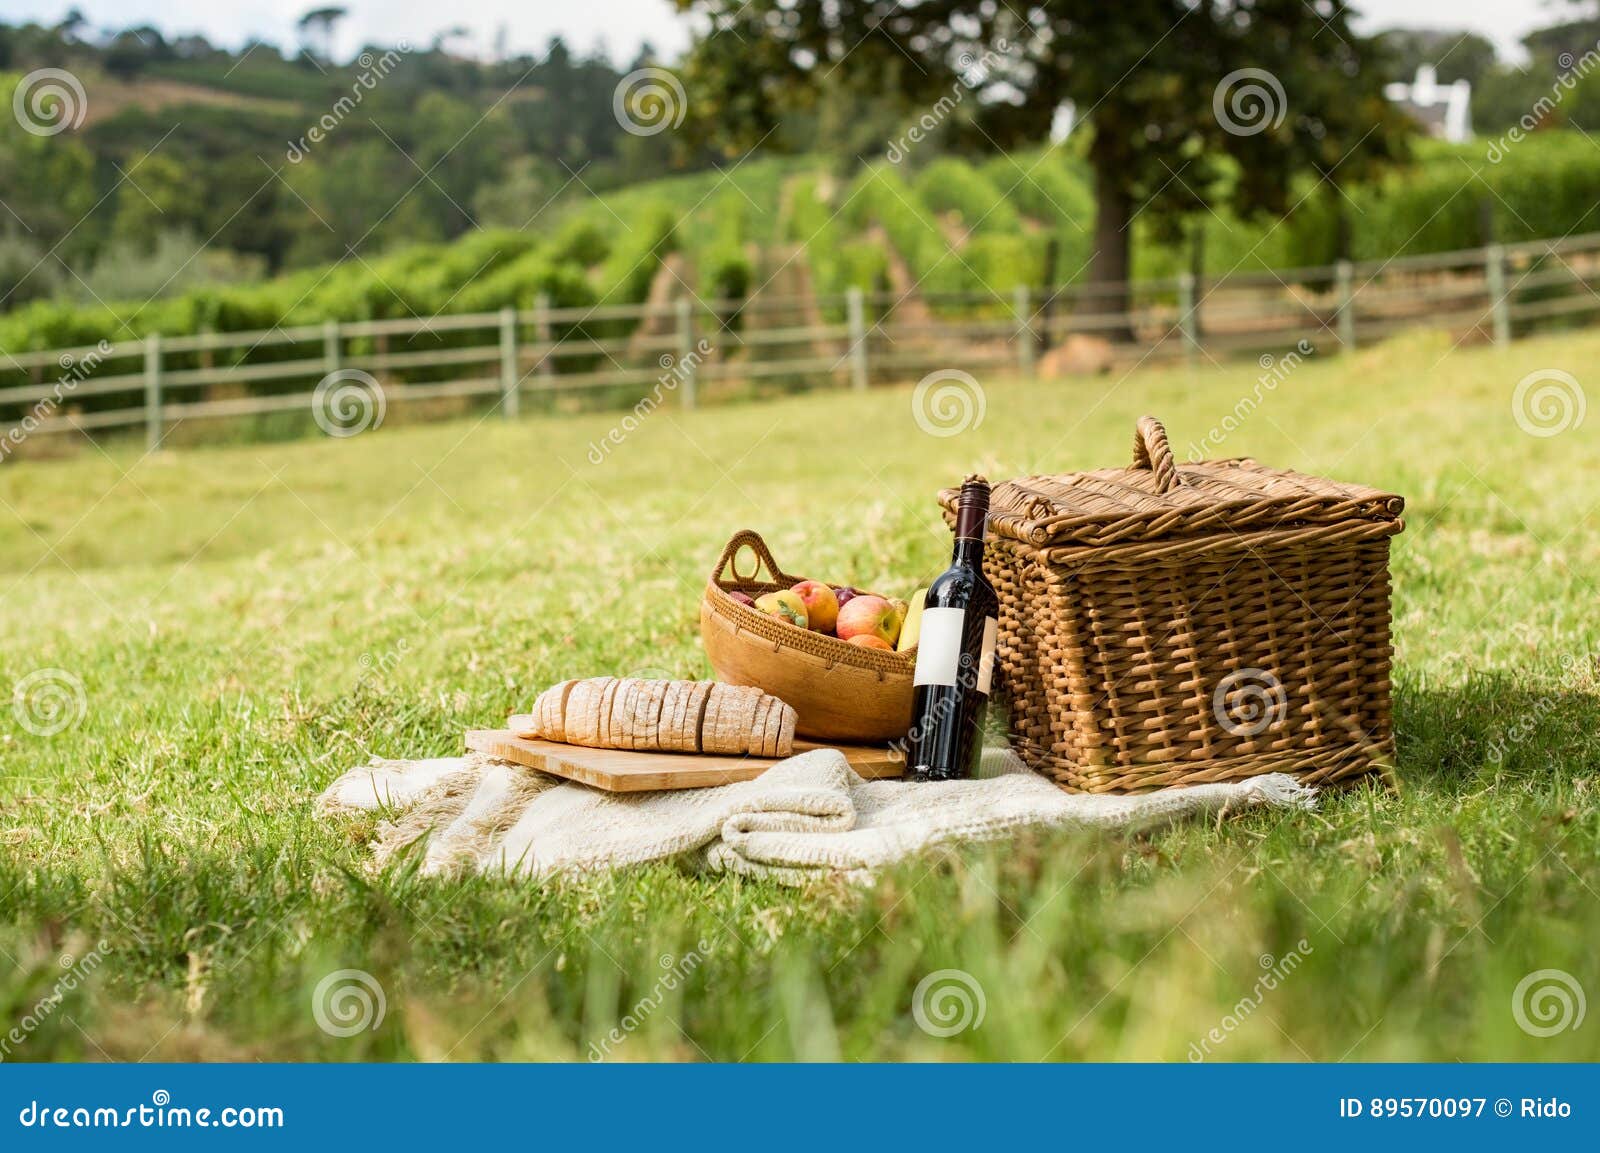 picnic at park